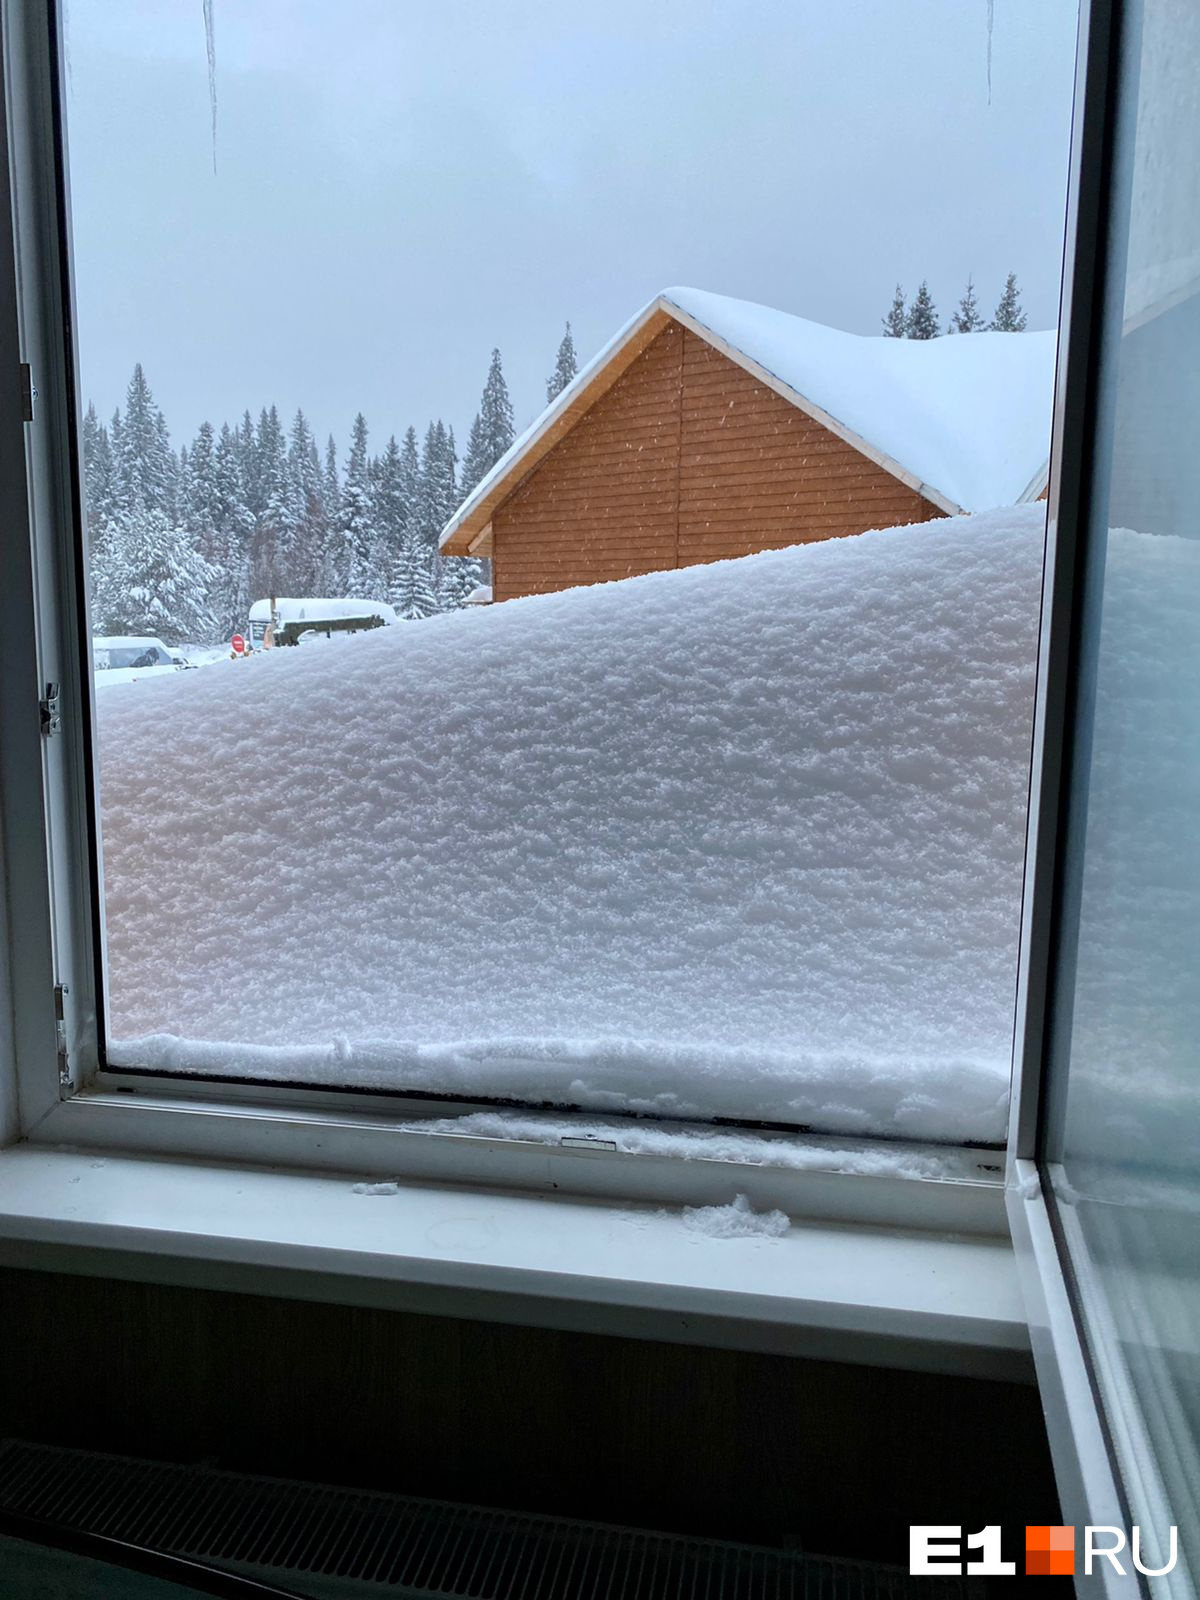 Снега выпало столько, что на базе отдыха его было по окна